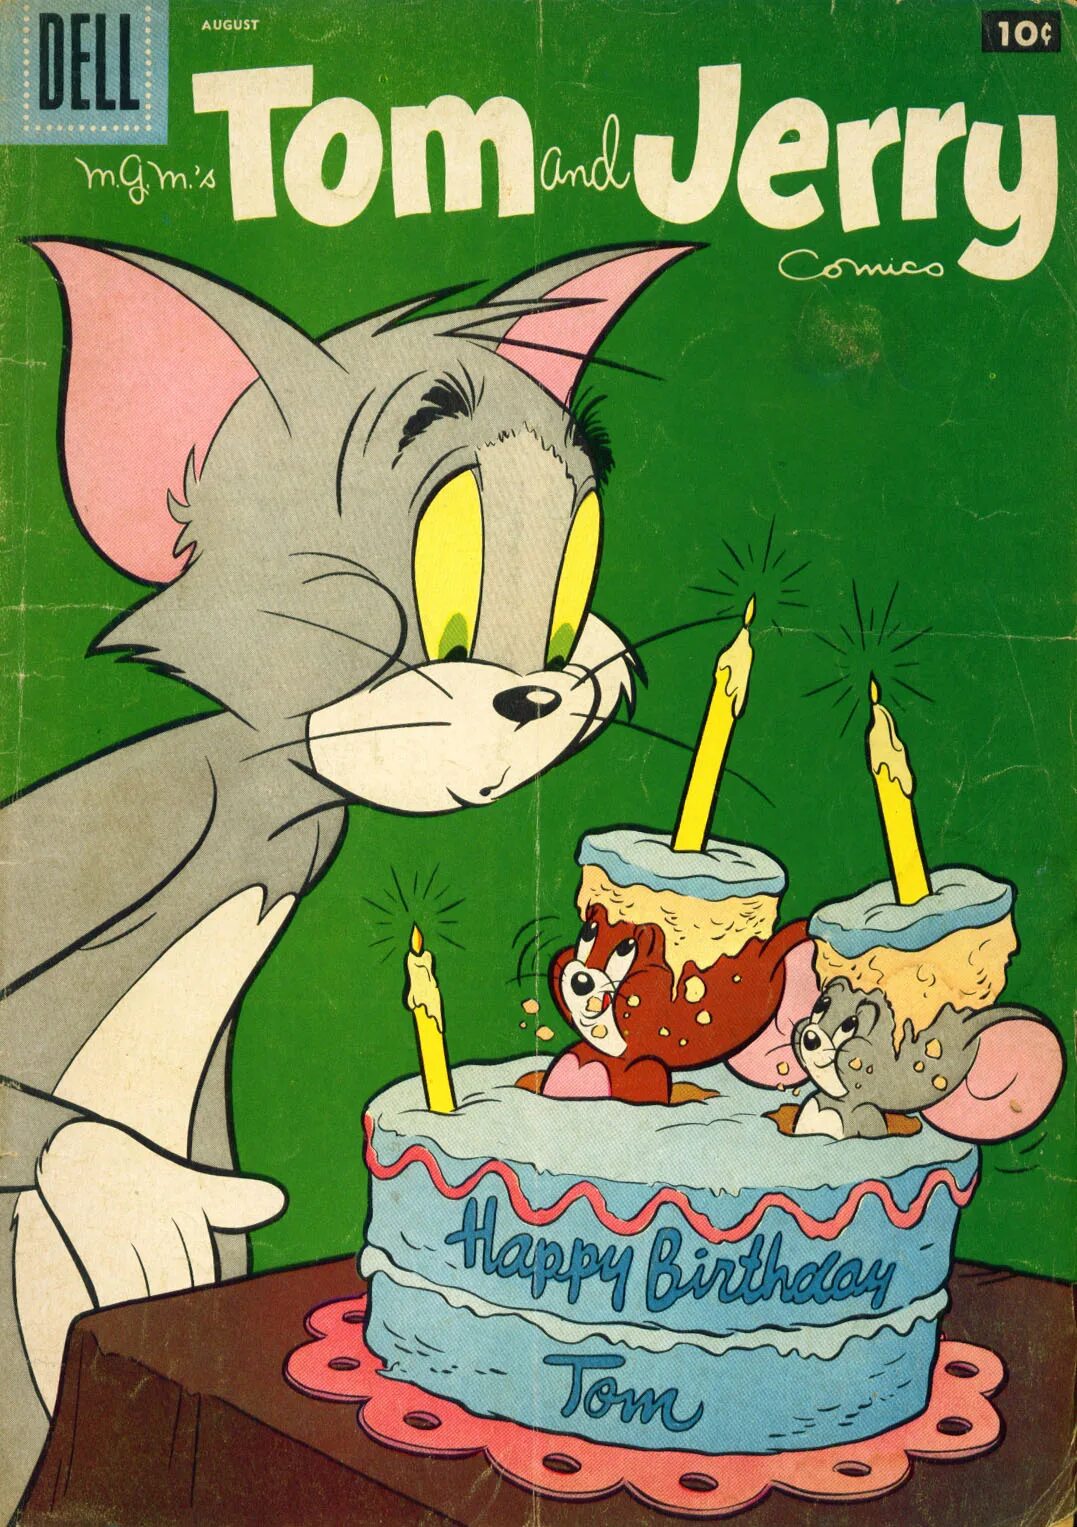 Toms birthday is. Tom and Jerry. Джерри с днем рождения. Юбилей том и Джерри. Том и Джерри поздравляют с днем рождения.